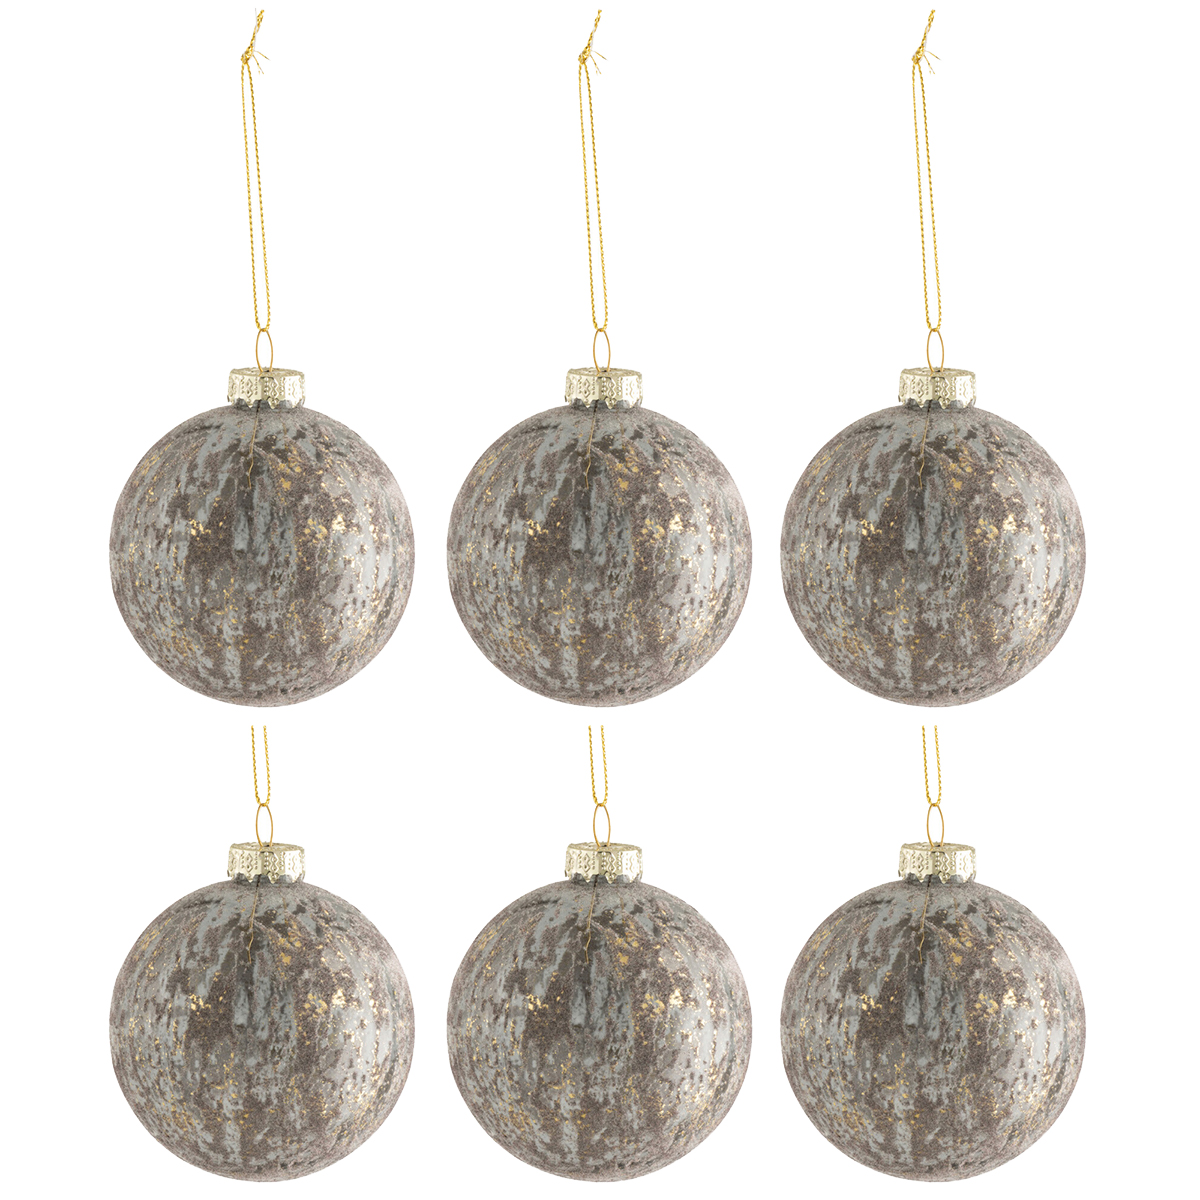 6 Boules de Nol - velours gris et or - 8 cm